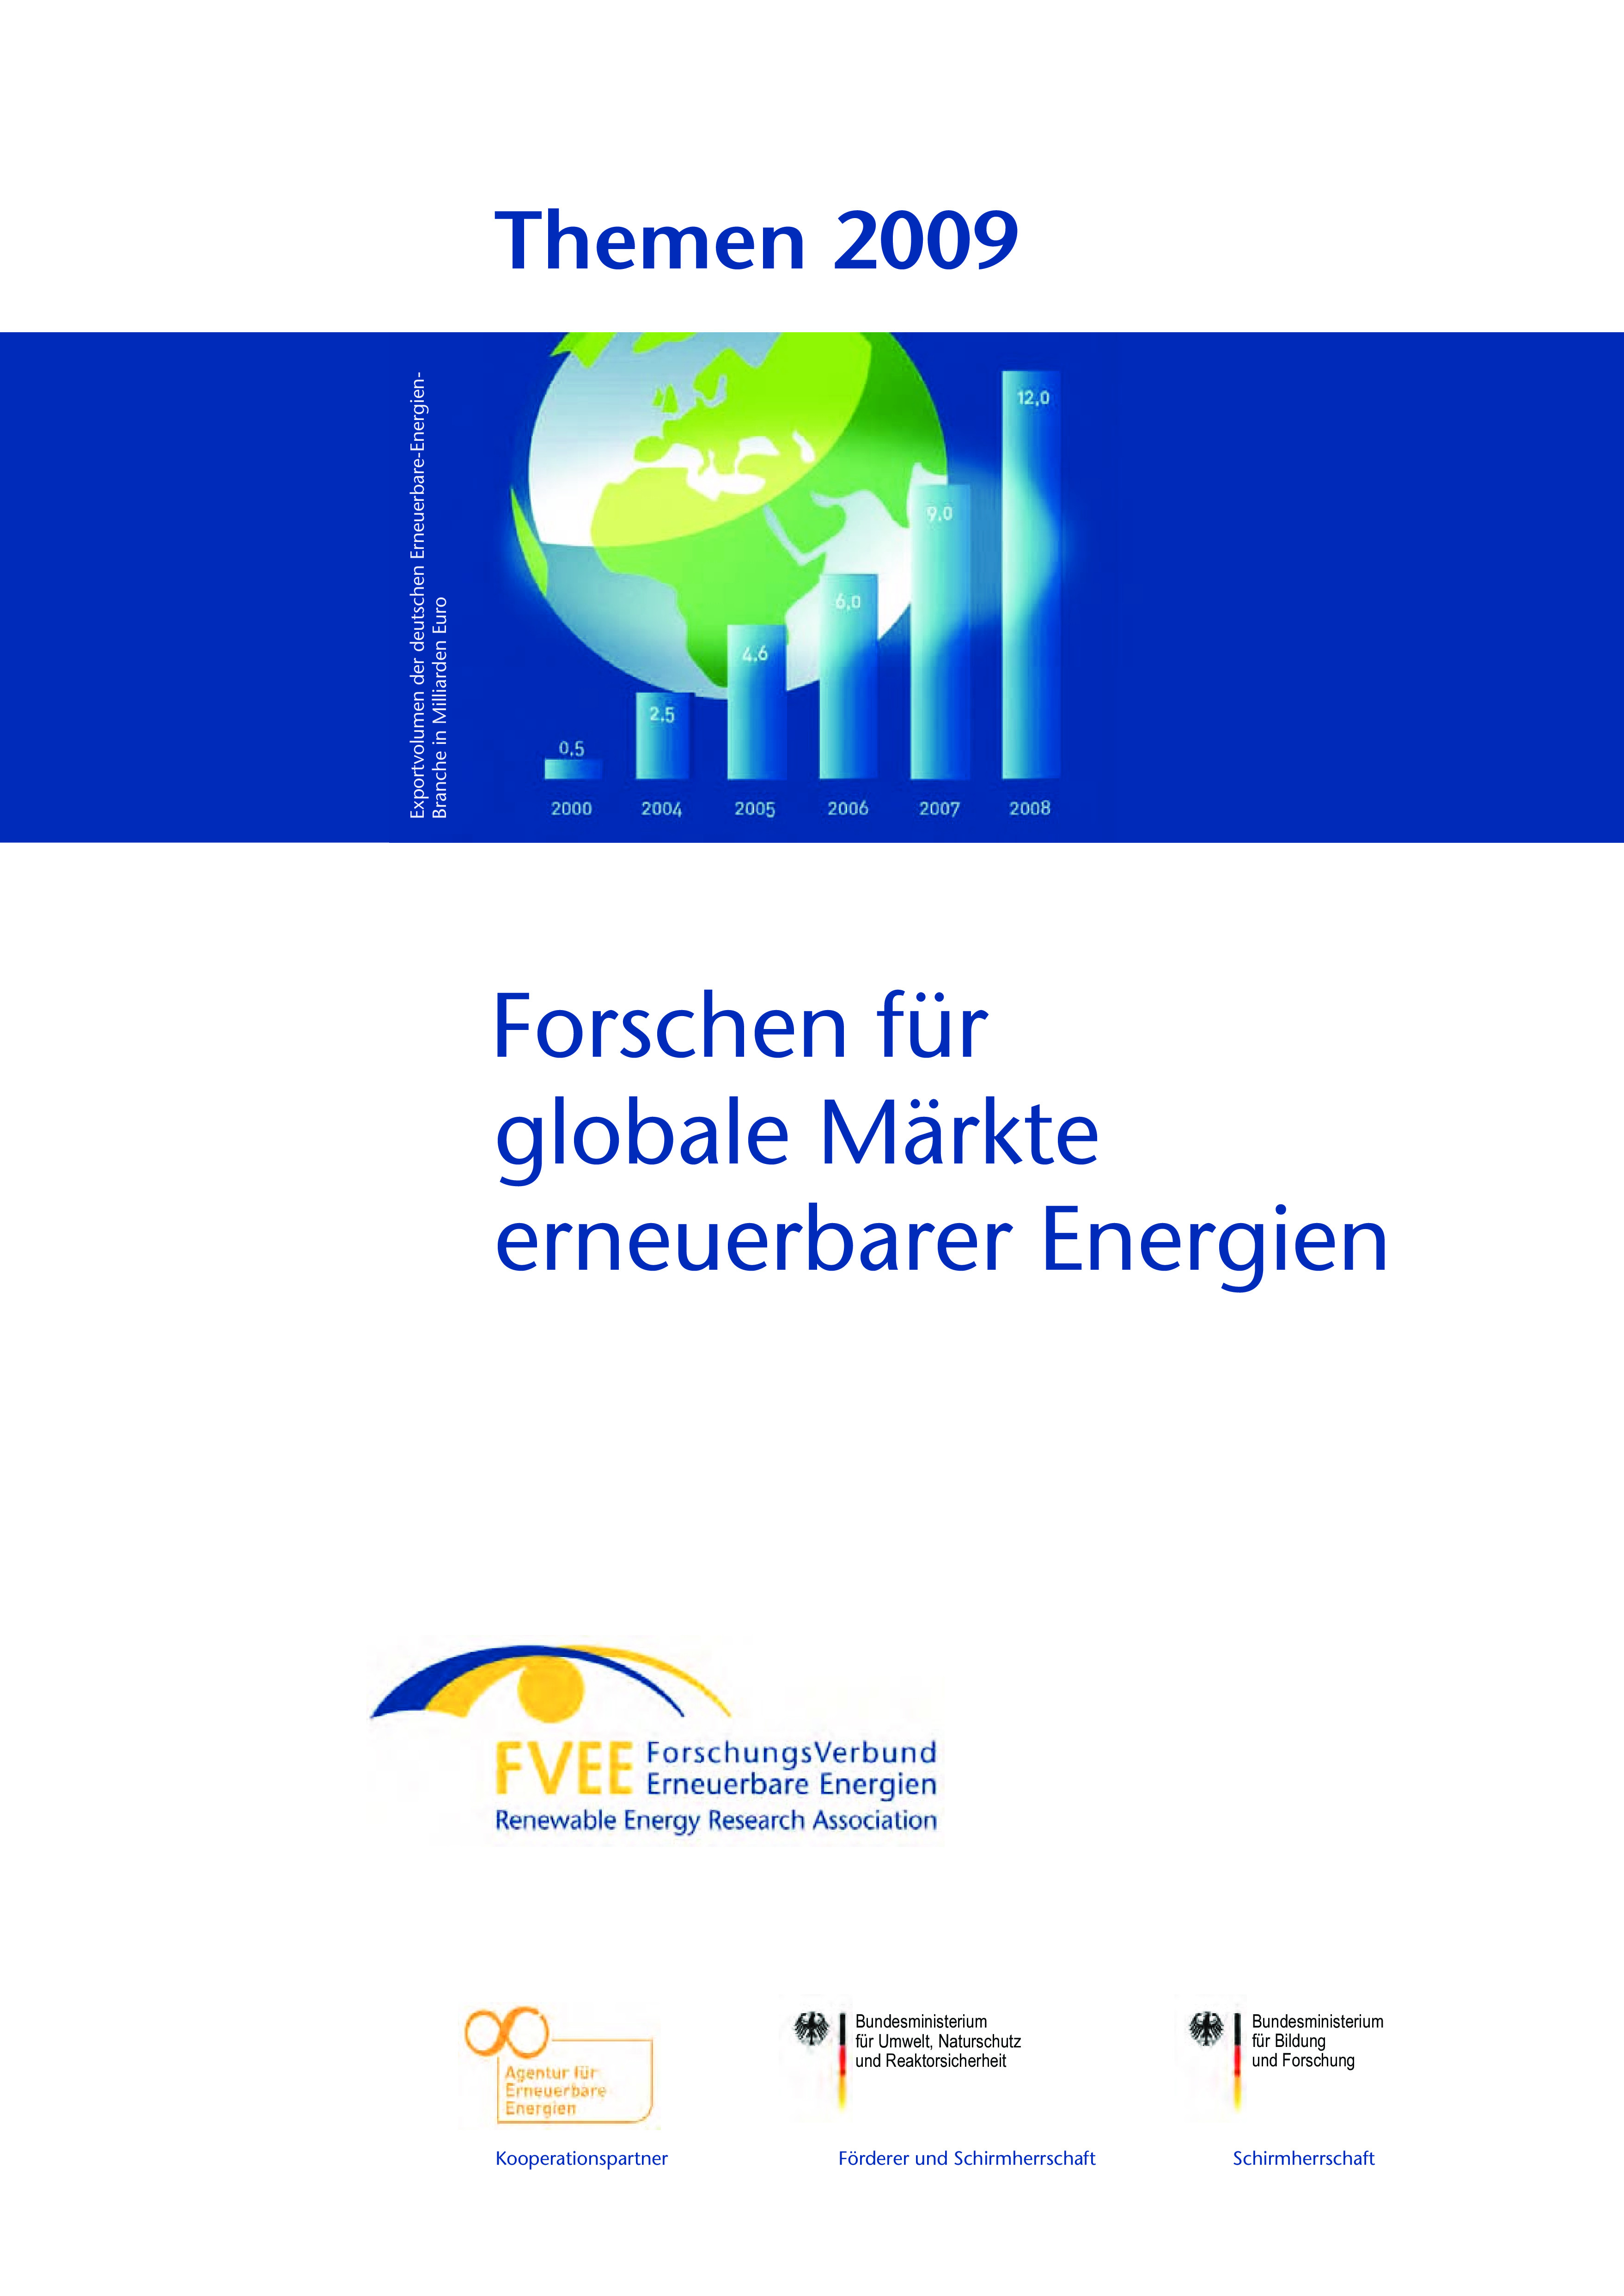 Themen 2009: Forschen für globale Märkte erneuerbarer Energien